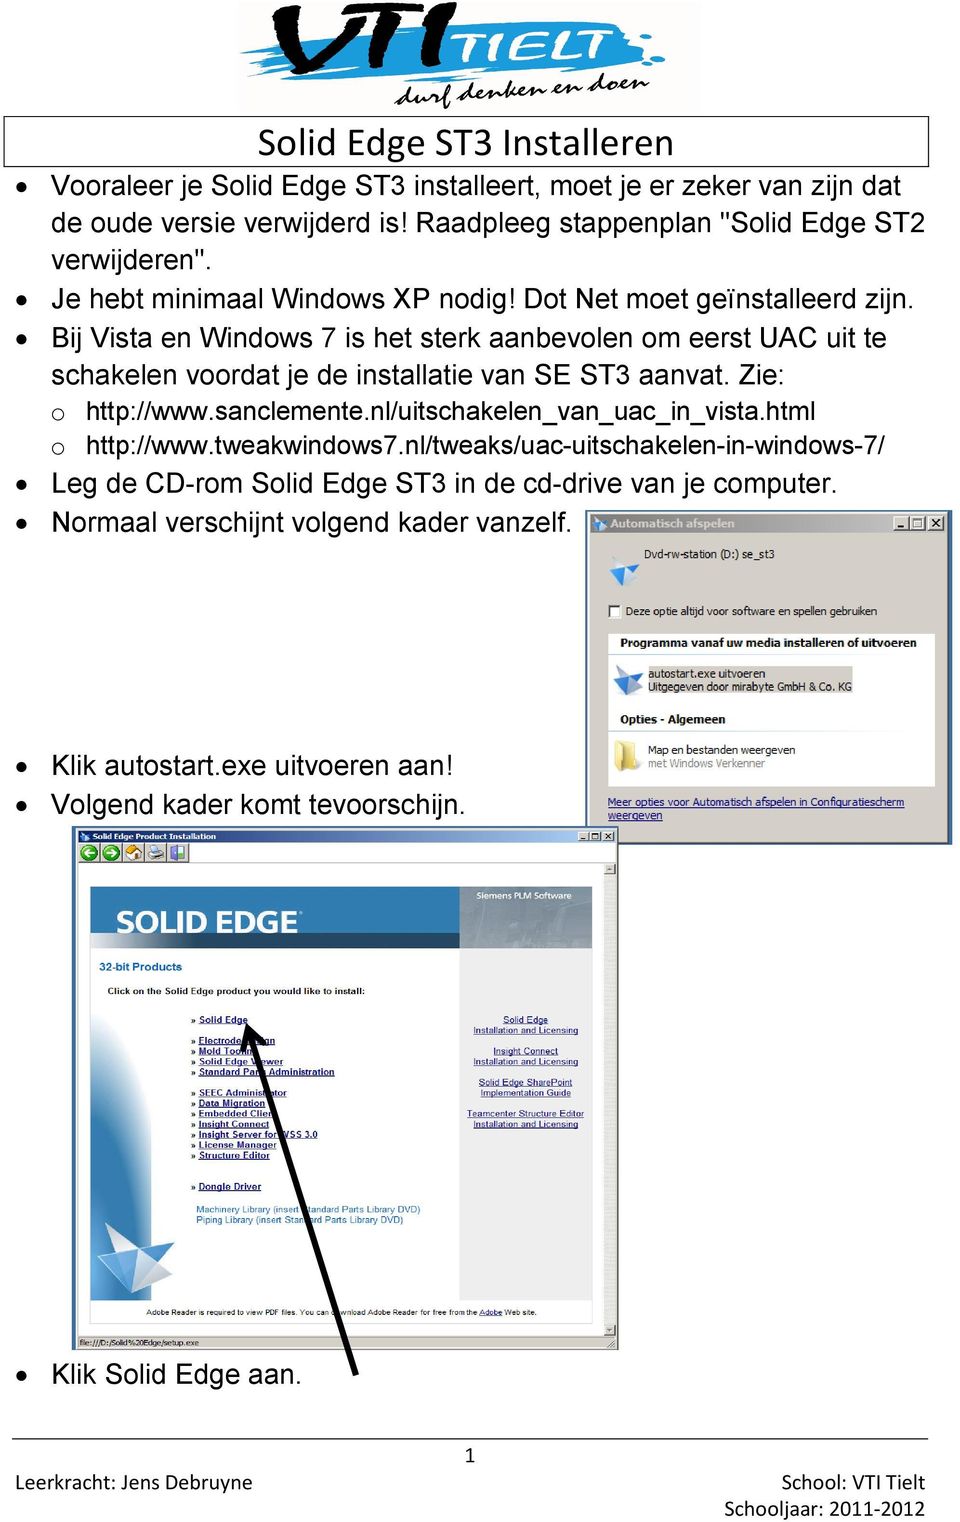 Bij Vista en Windows 7 is het sterk aanbevolen om eerst UAC uit te schakelen voordat je de installatie van SE ST3 aanvat. Zie: o http://www.sanclemente.